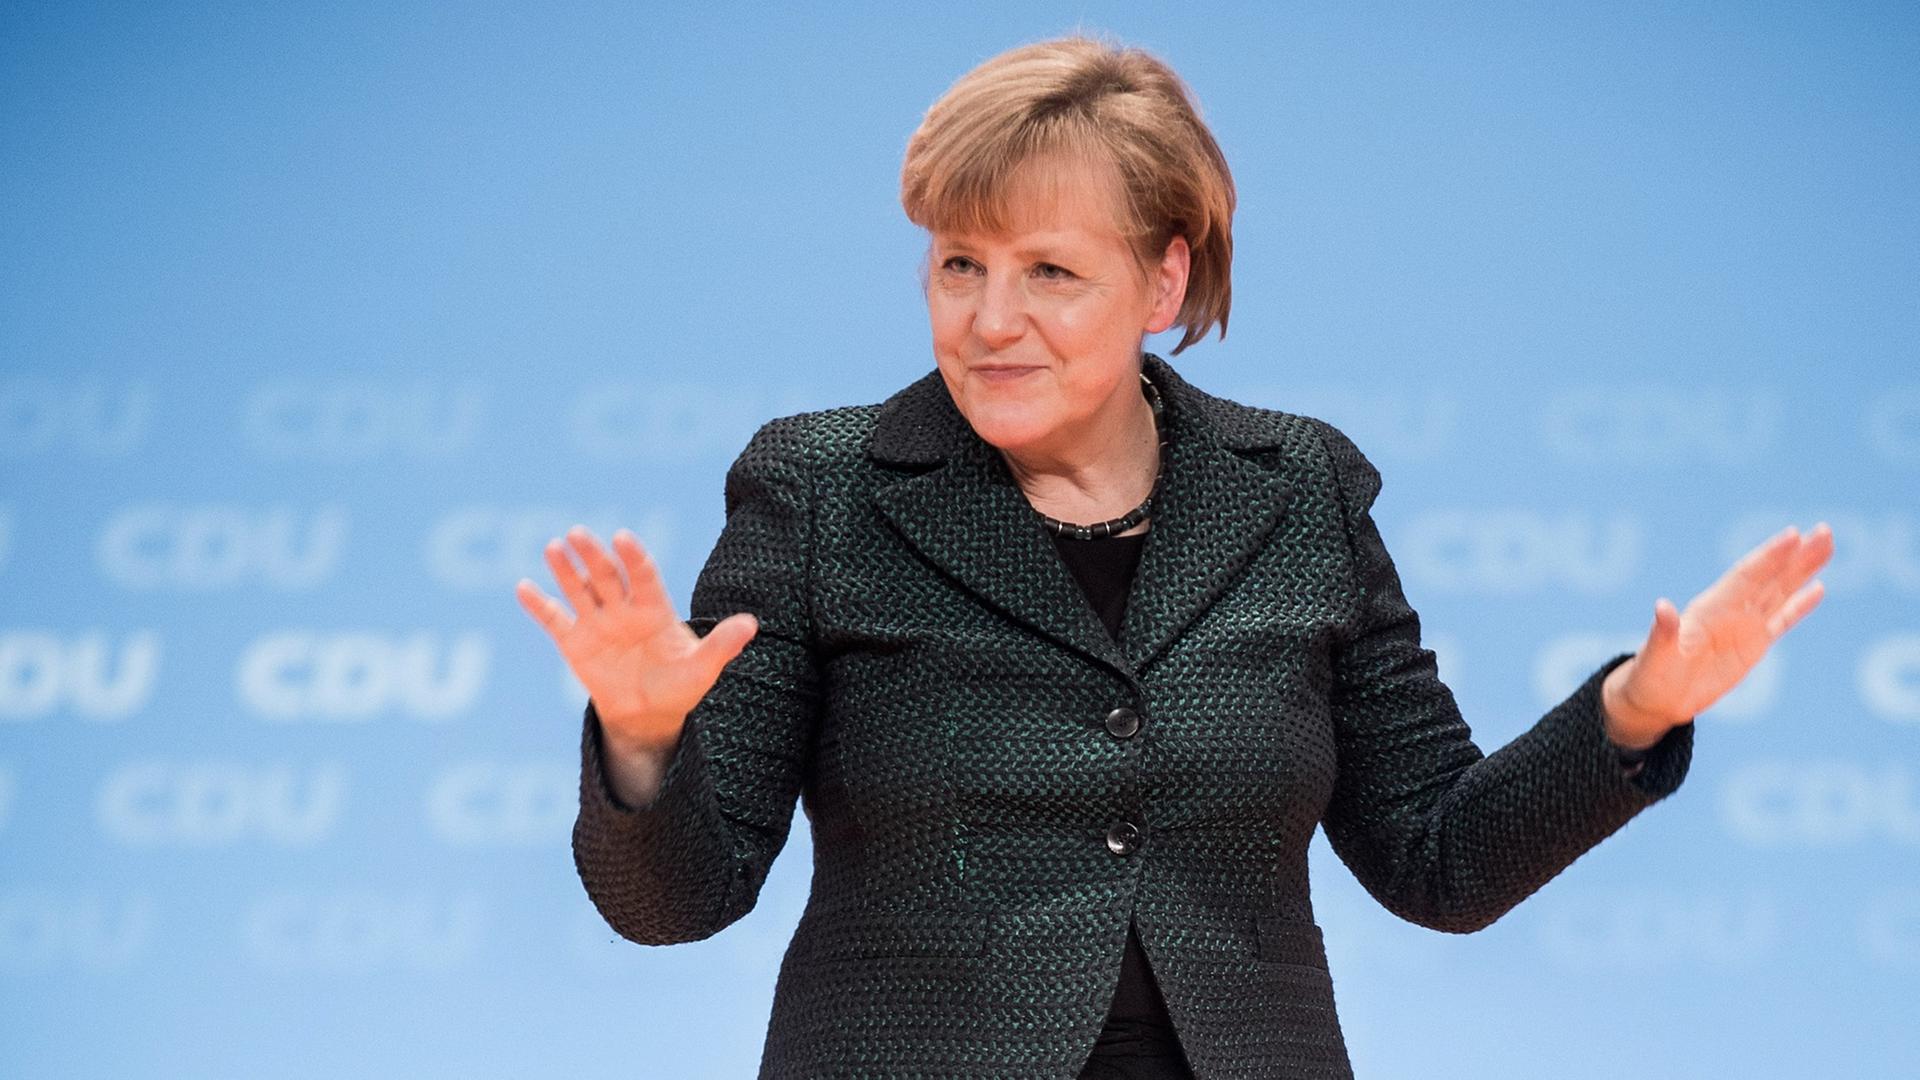 Die CDU-Vorsitzende und Bundeskanzlerin Angela Merkel winkt am 09.12.2014 in Köln (Nordrhein-Westfalen) nach ihrer Rede während des Bundesparteitages der CDU.